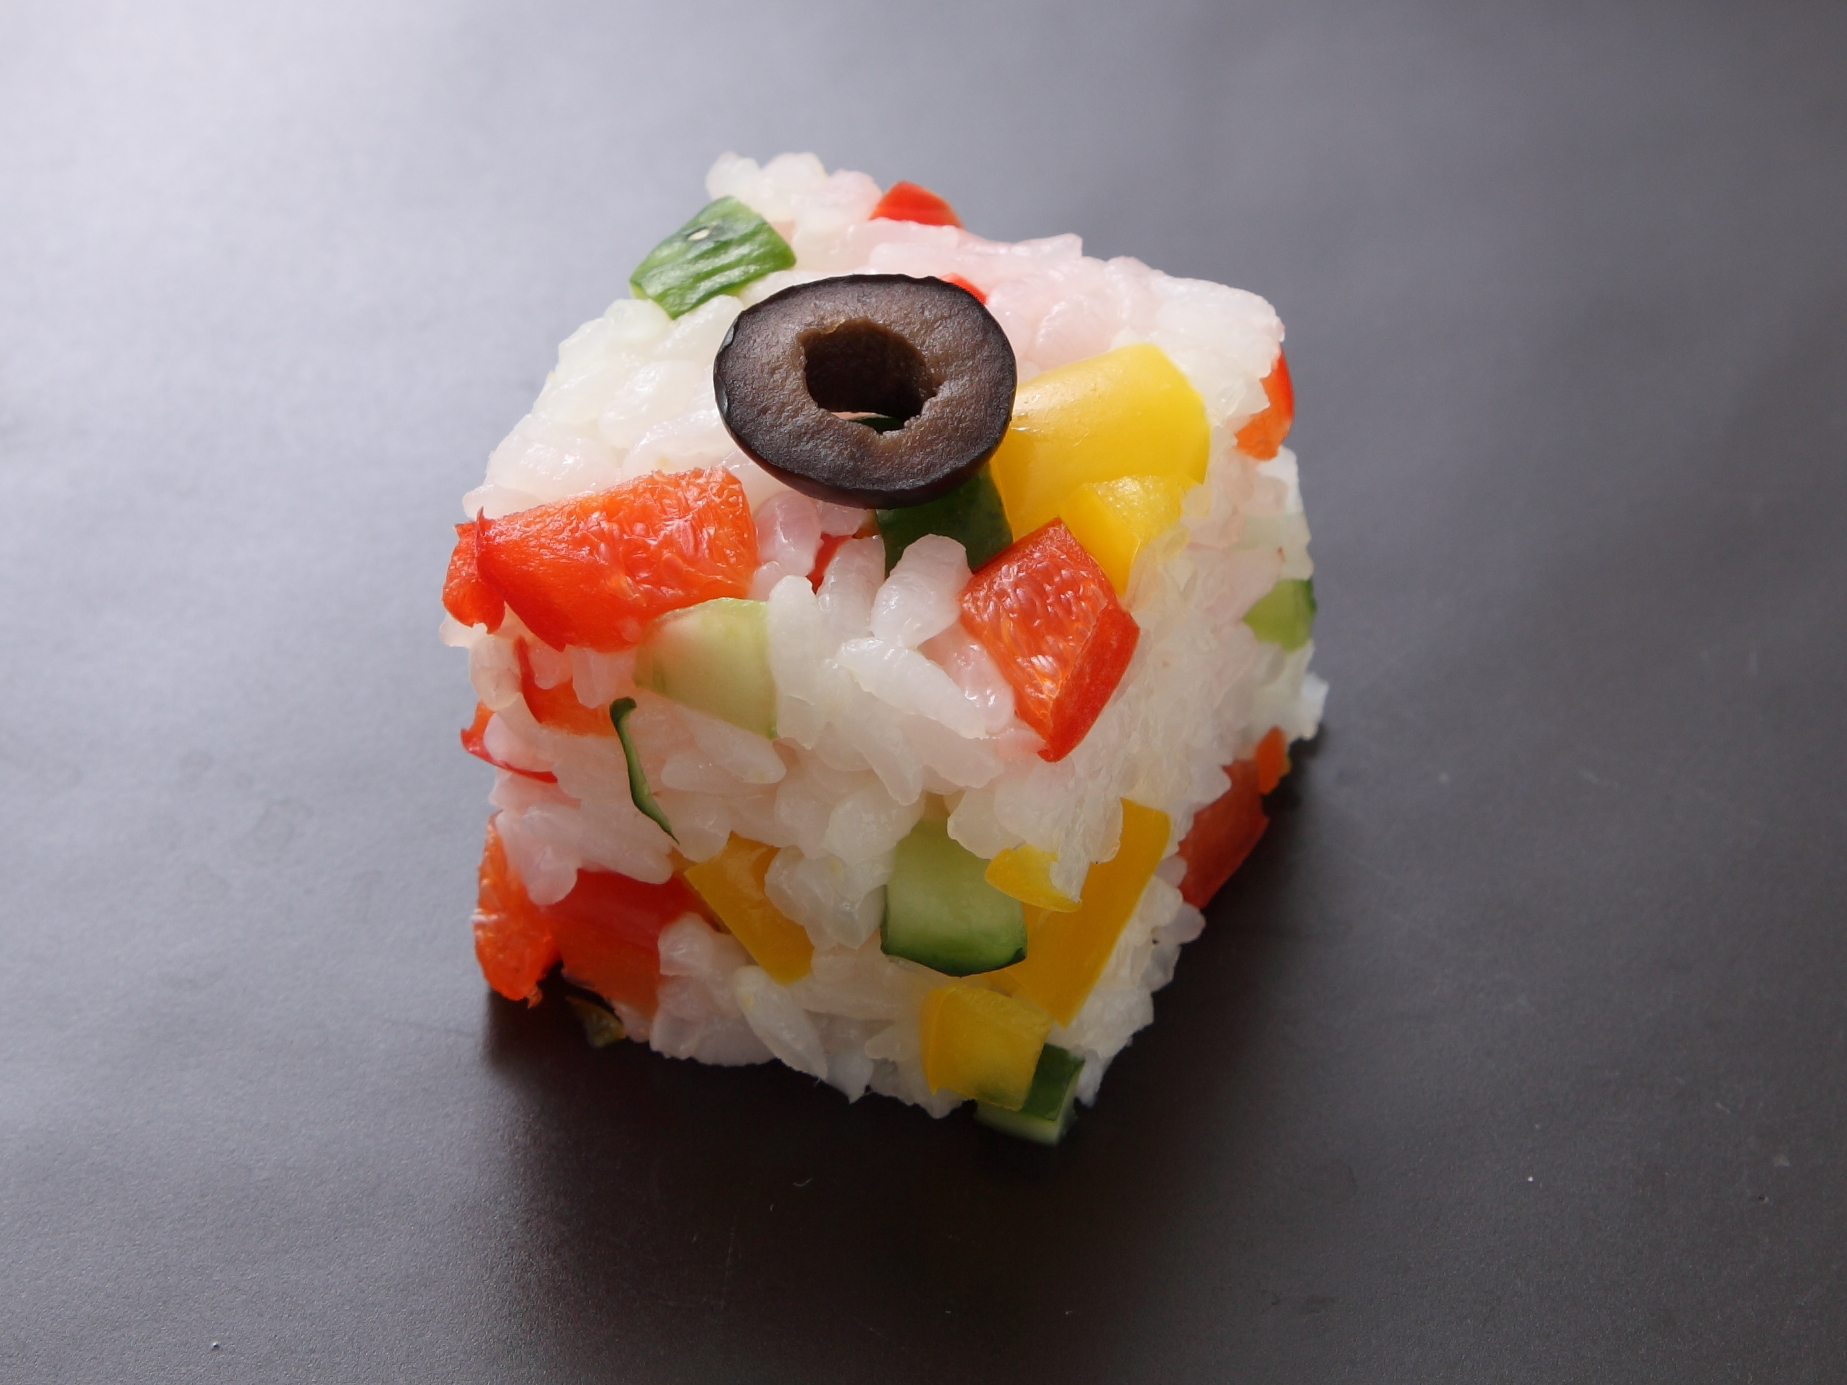 ピクルスサラダのキューブ寿司